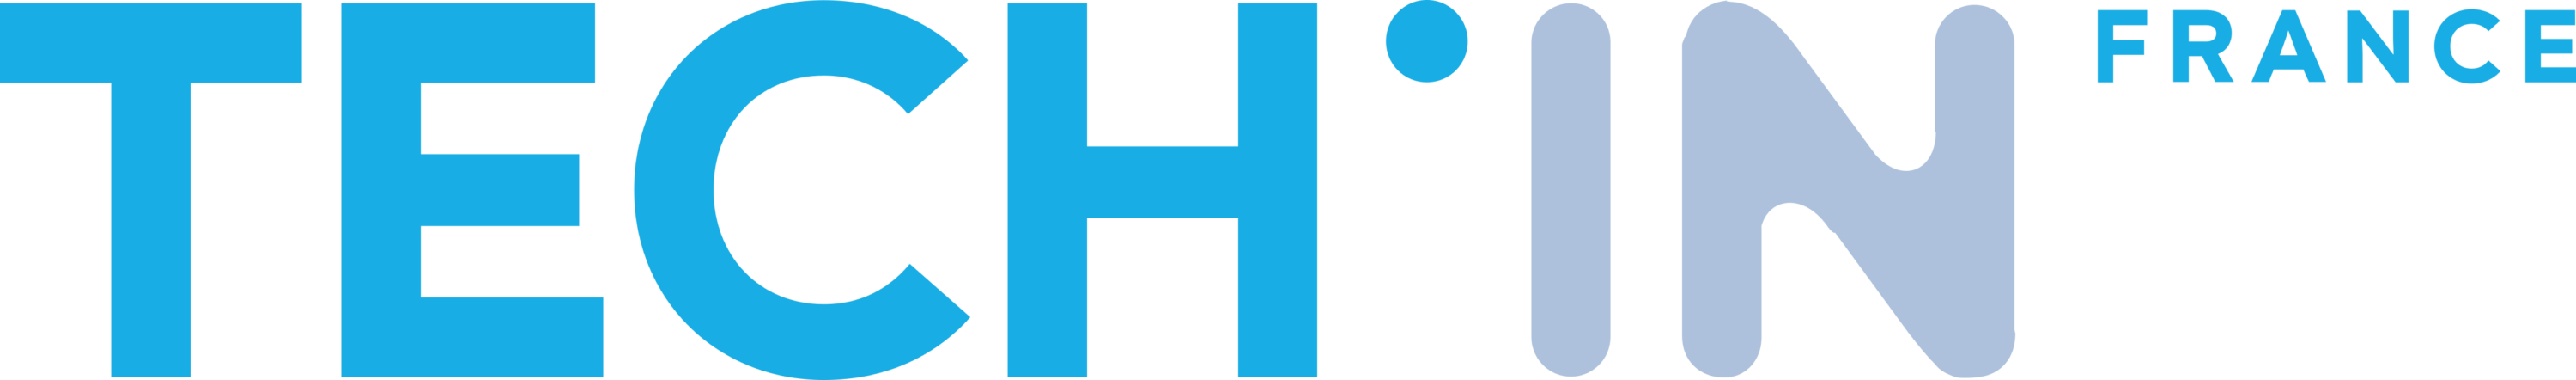 TECH IN France Logo